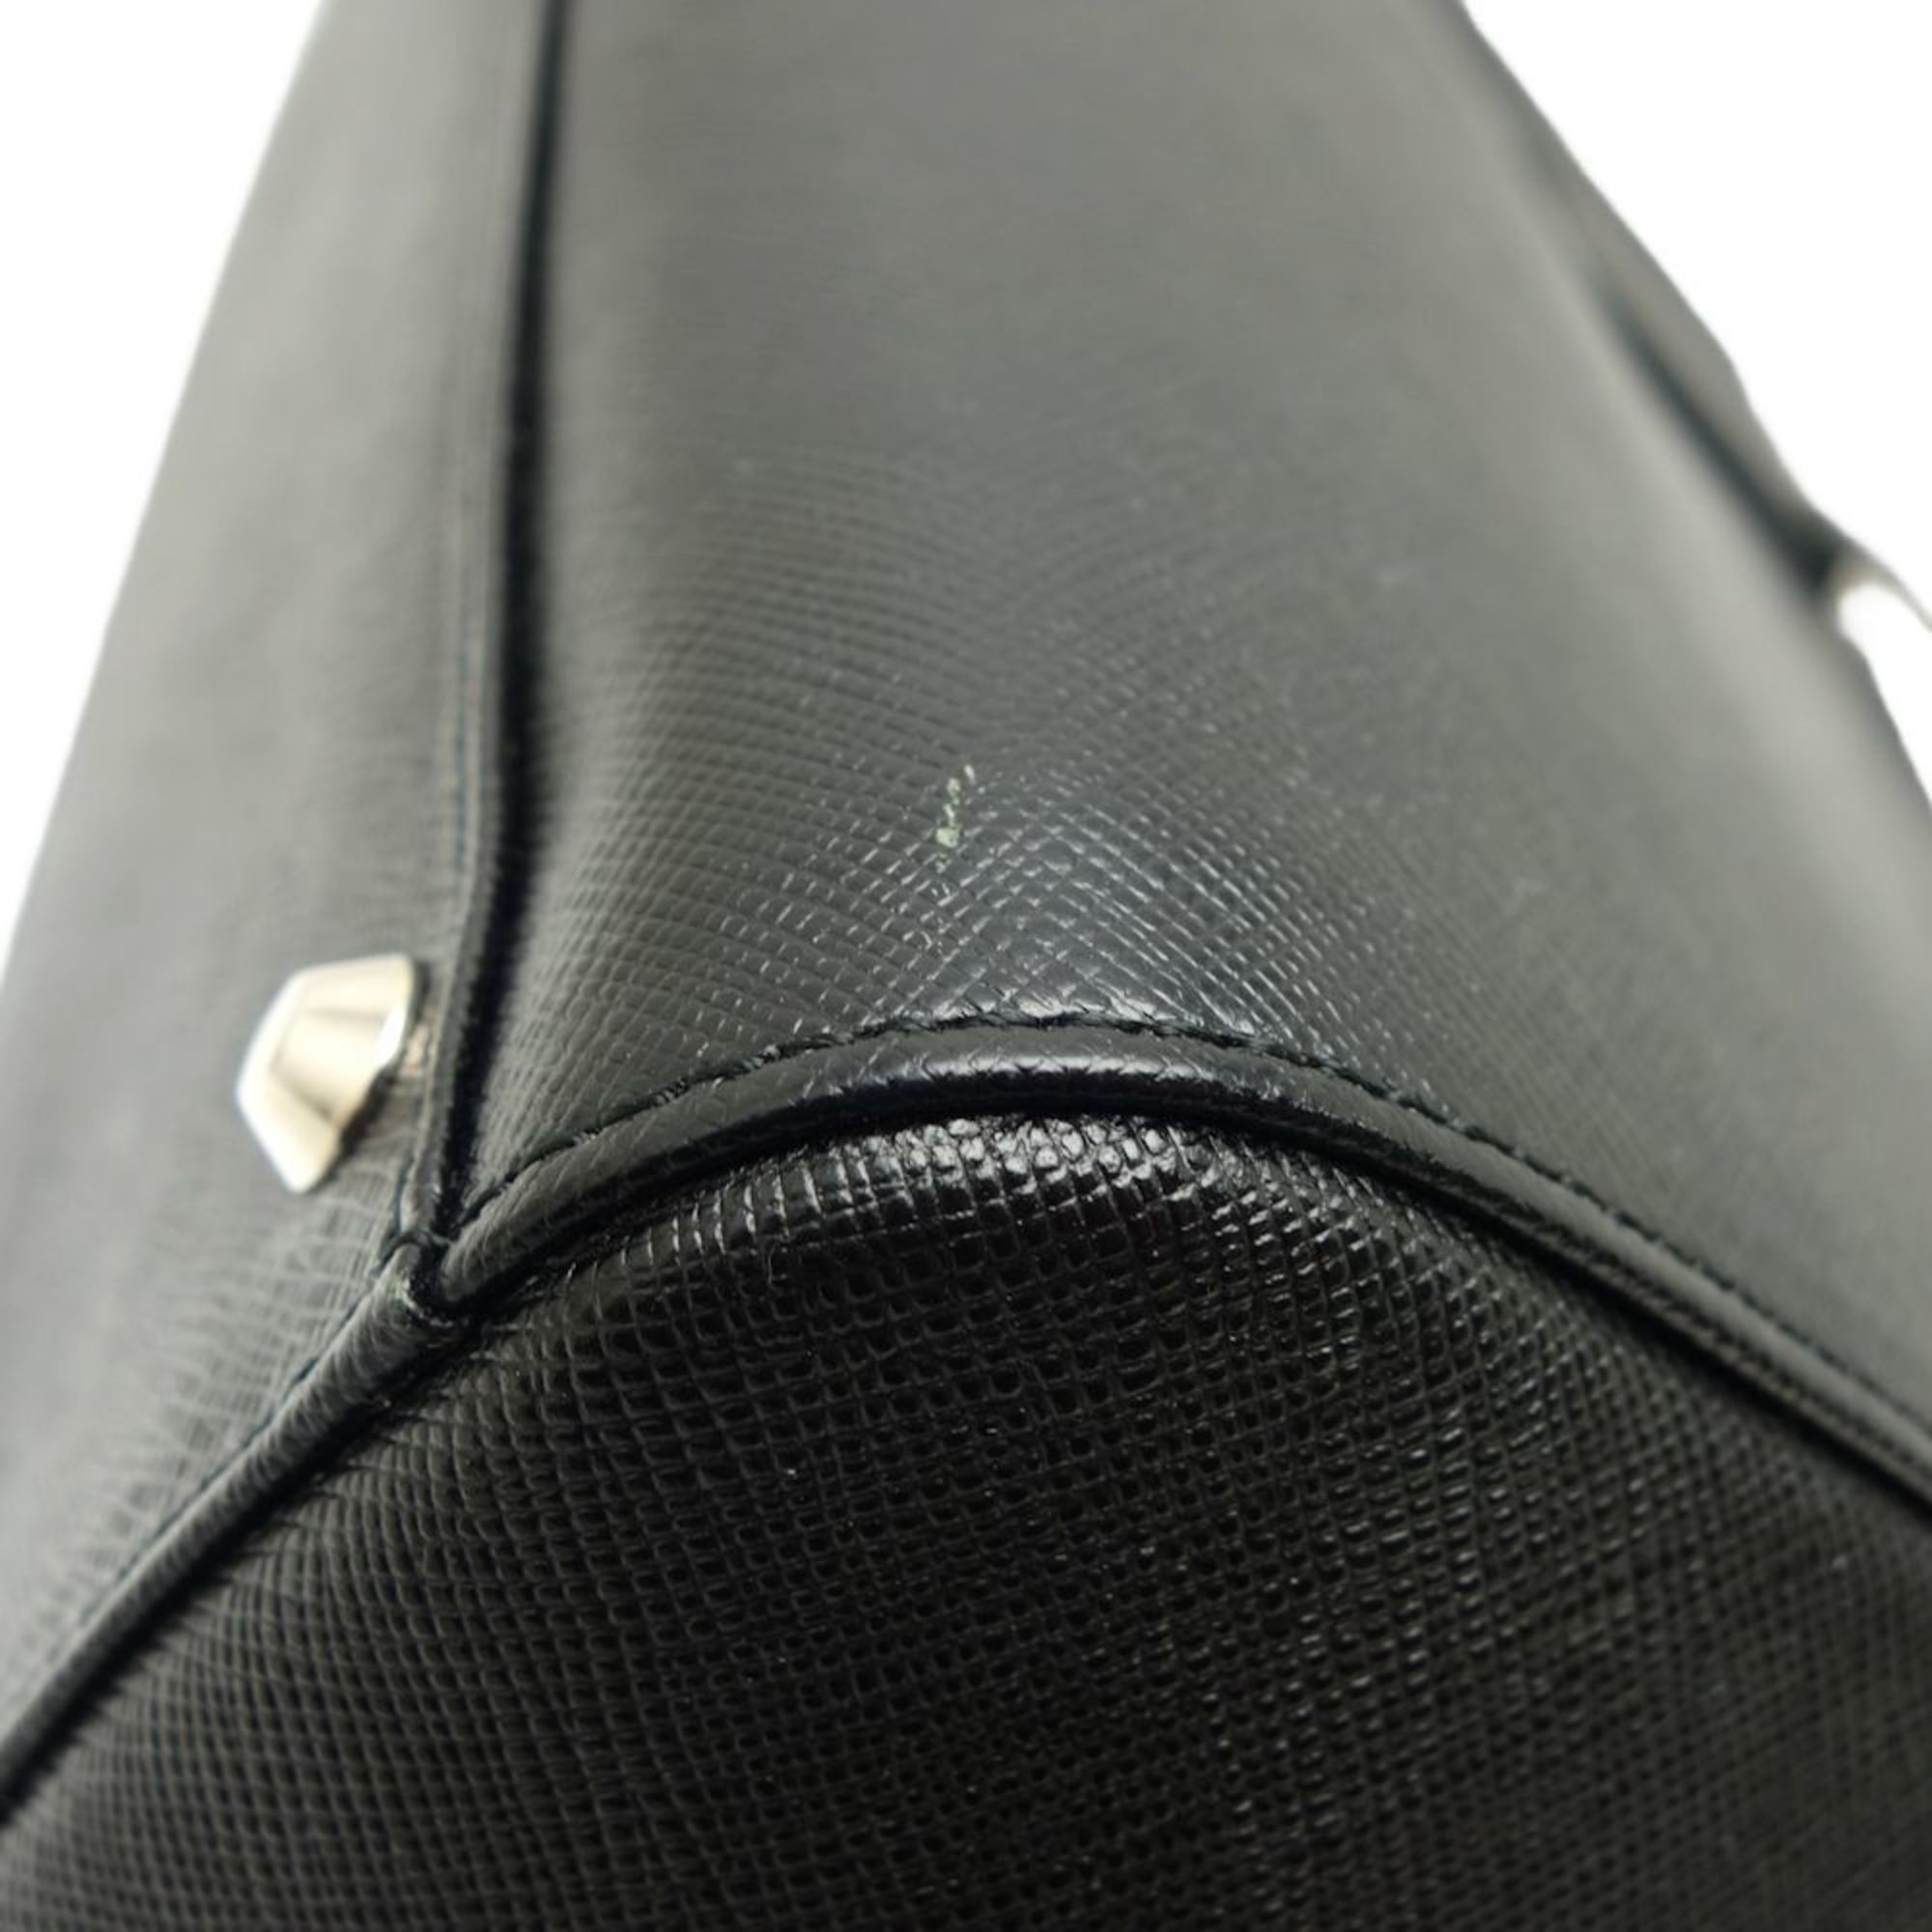 BURBERRY Handbag Saffiano Leather Black 450299